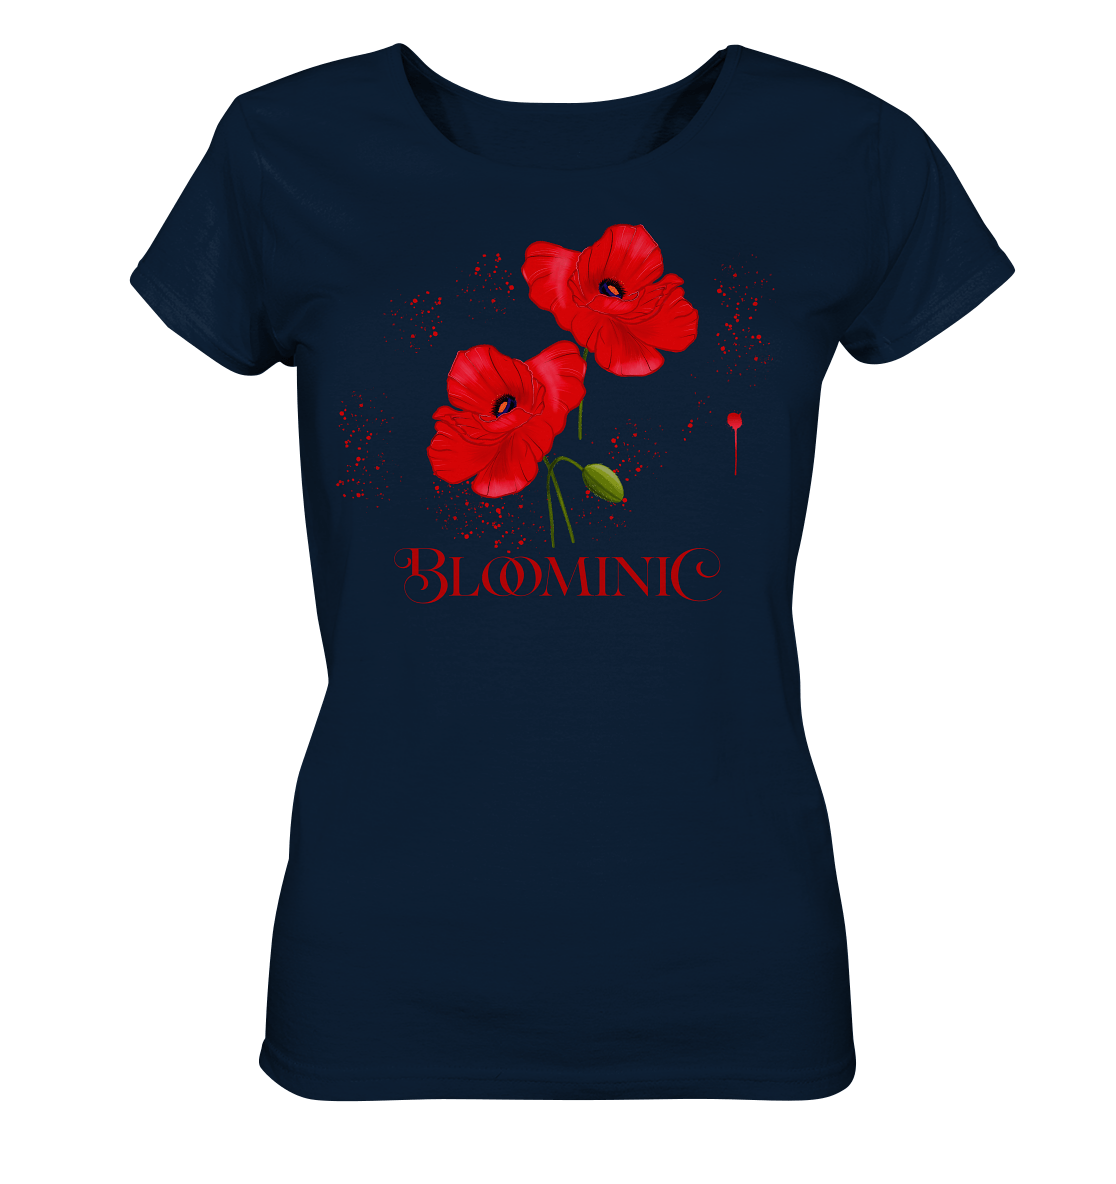 Damen T-Shirt in navy mit roten, handgezeichneten Mohnblumen. Florale Muster Mohnblumen Zeichnung Shirt Bloominic 